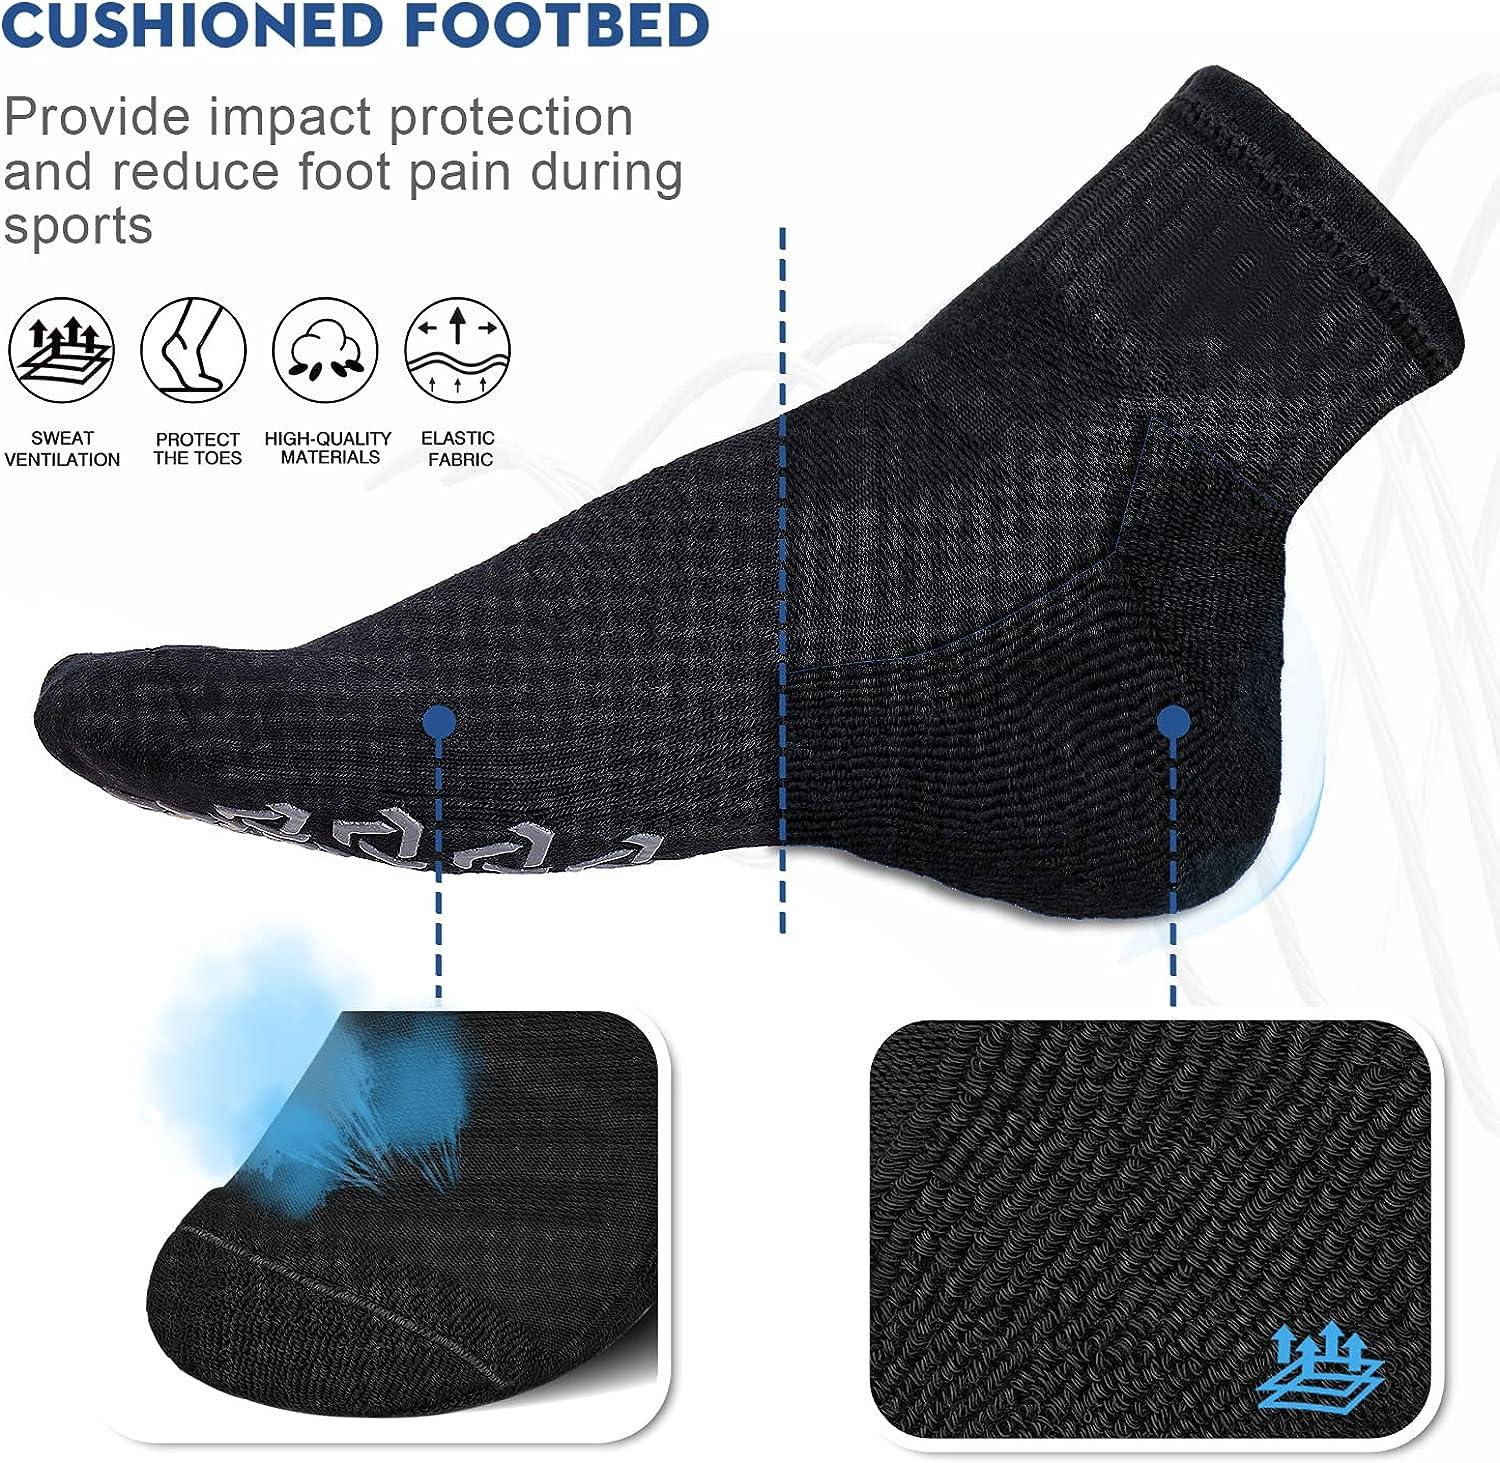 Yoga Socks For Women With Grips Non-slip Five Toe Socks For